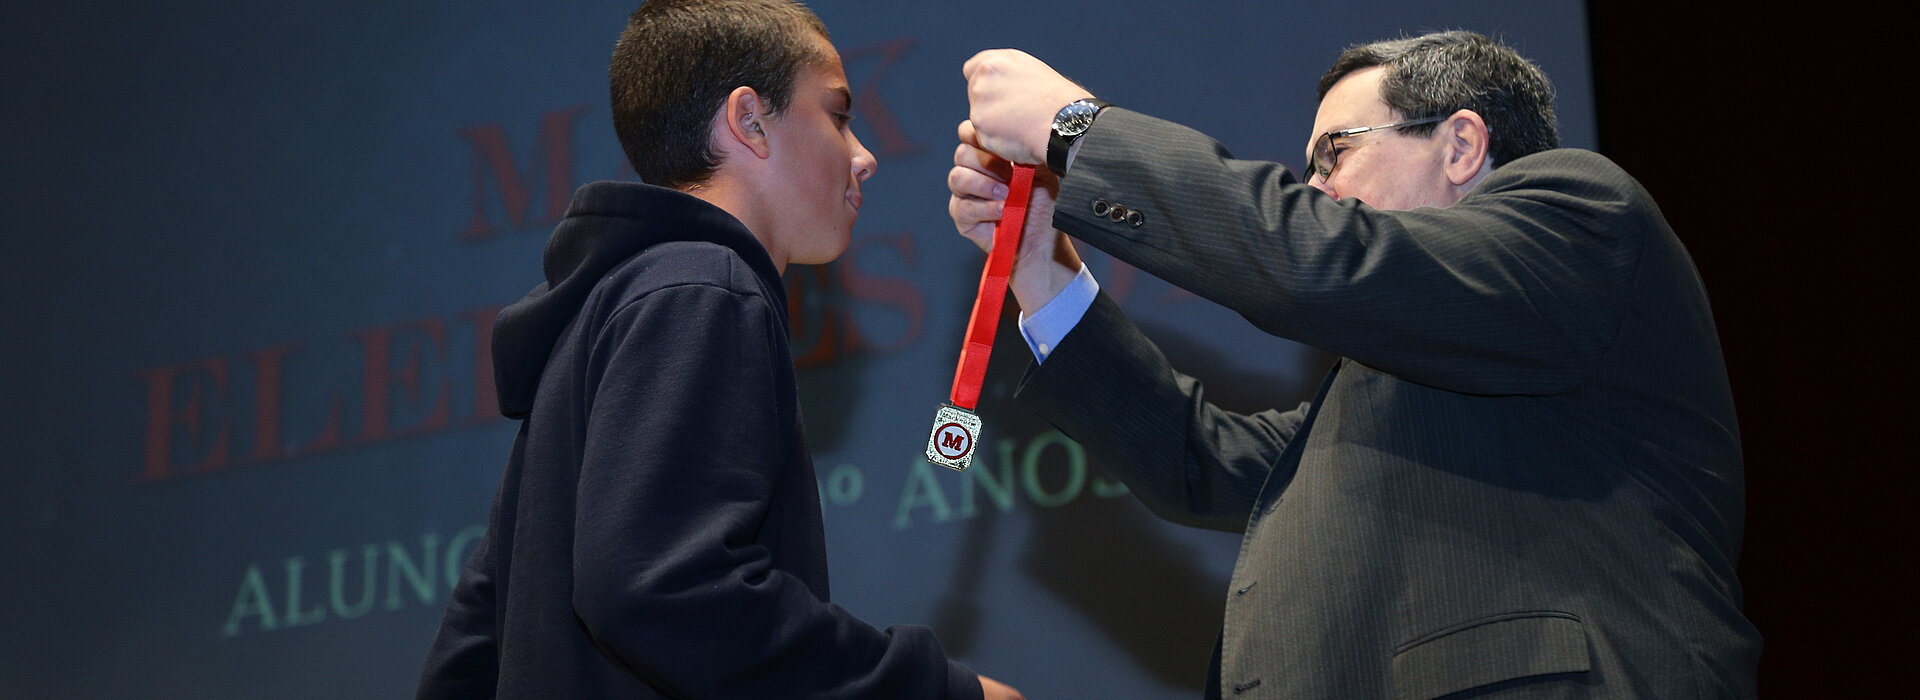 O aluno eleito, Pedro Valim, recebe medalha de Solano Portela